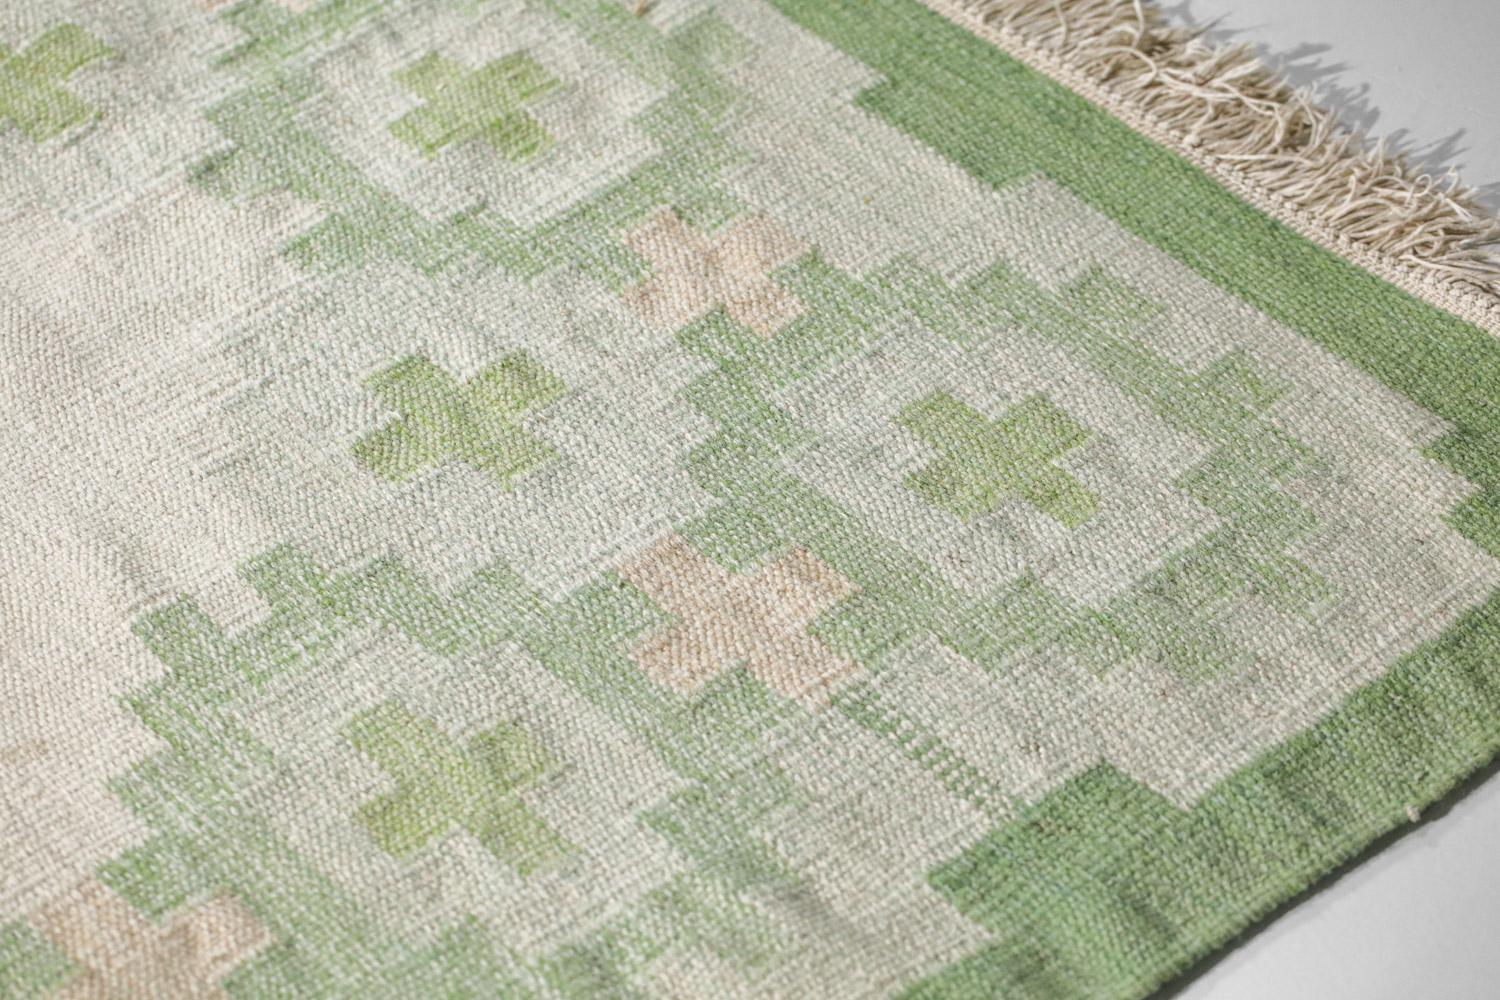 Sehr großer skandinavischer Teppich aus den 60er Jahren. Flachgewebetechnik (Röllakan), Wolle auf Leinen. Traditionelle geometrische Muster in den Farben Grün, Weiß und Beige. Handgewebt in Schweden in den 50er und 60er Jahren. Ausgezeichneter